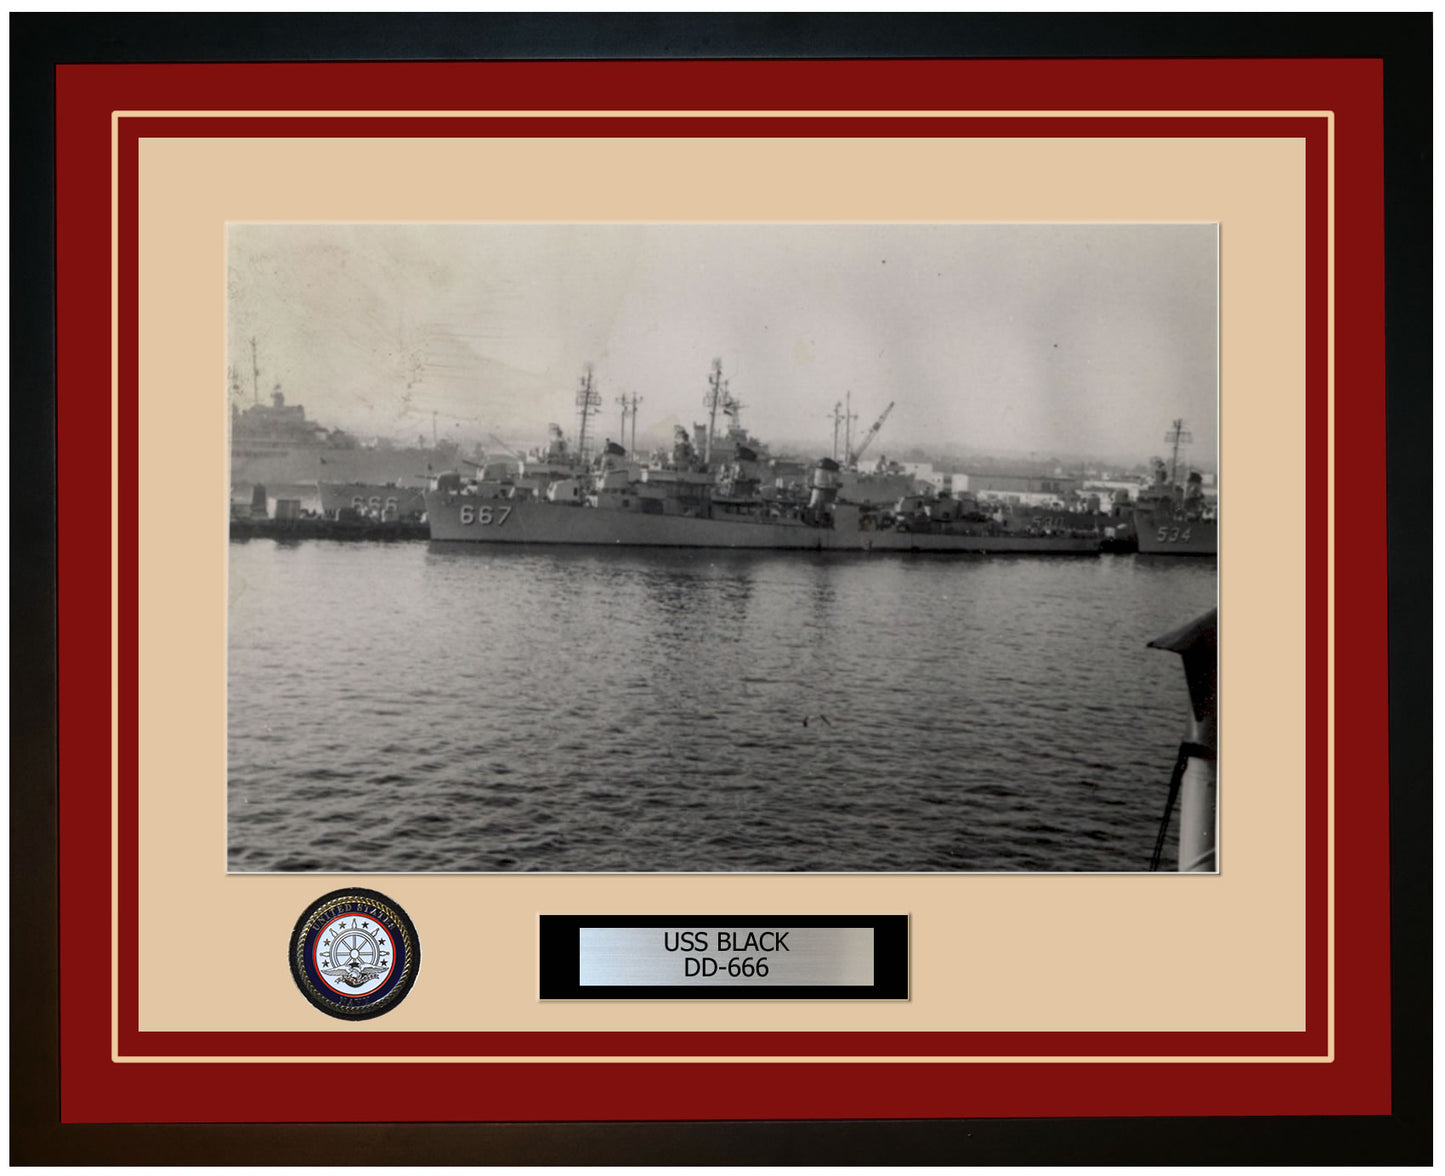 USS BLACK DD-666 Framed Navy Ship Photo Burgundy